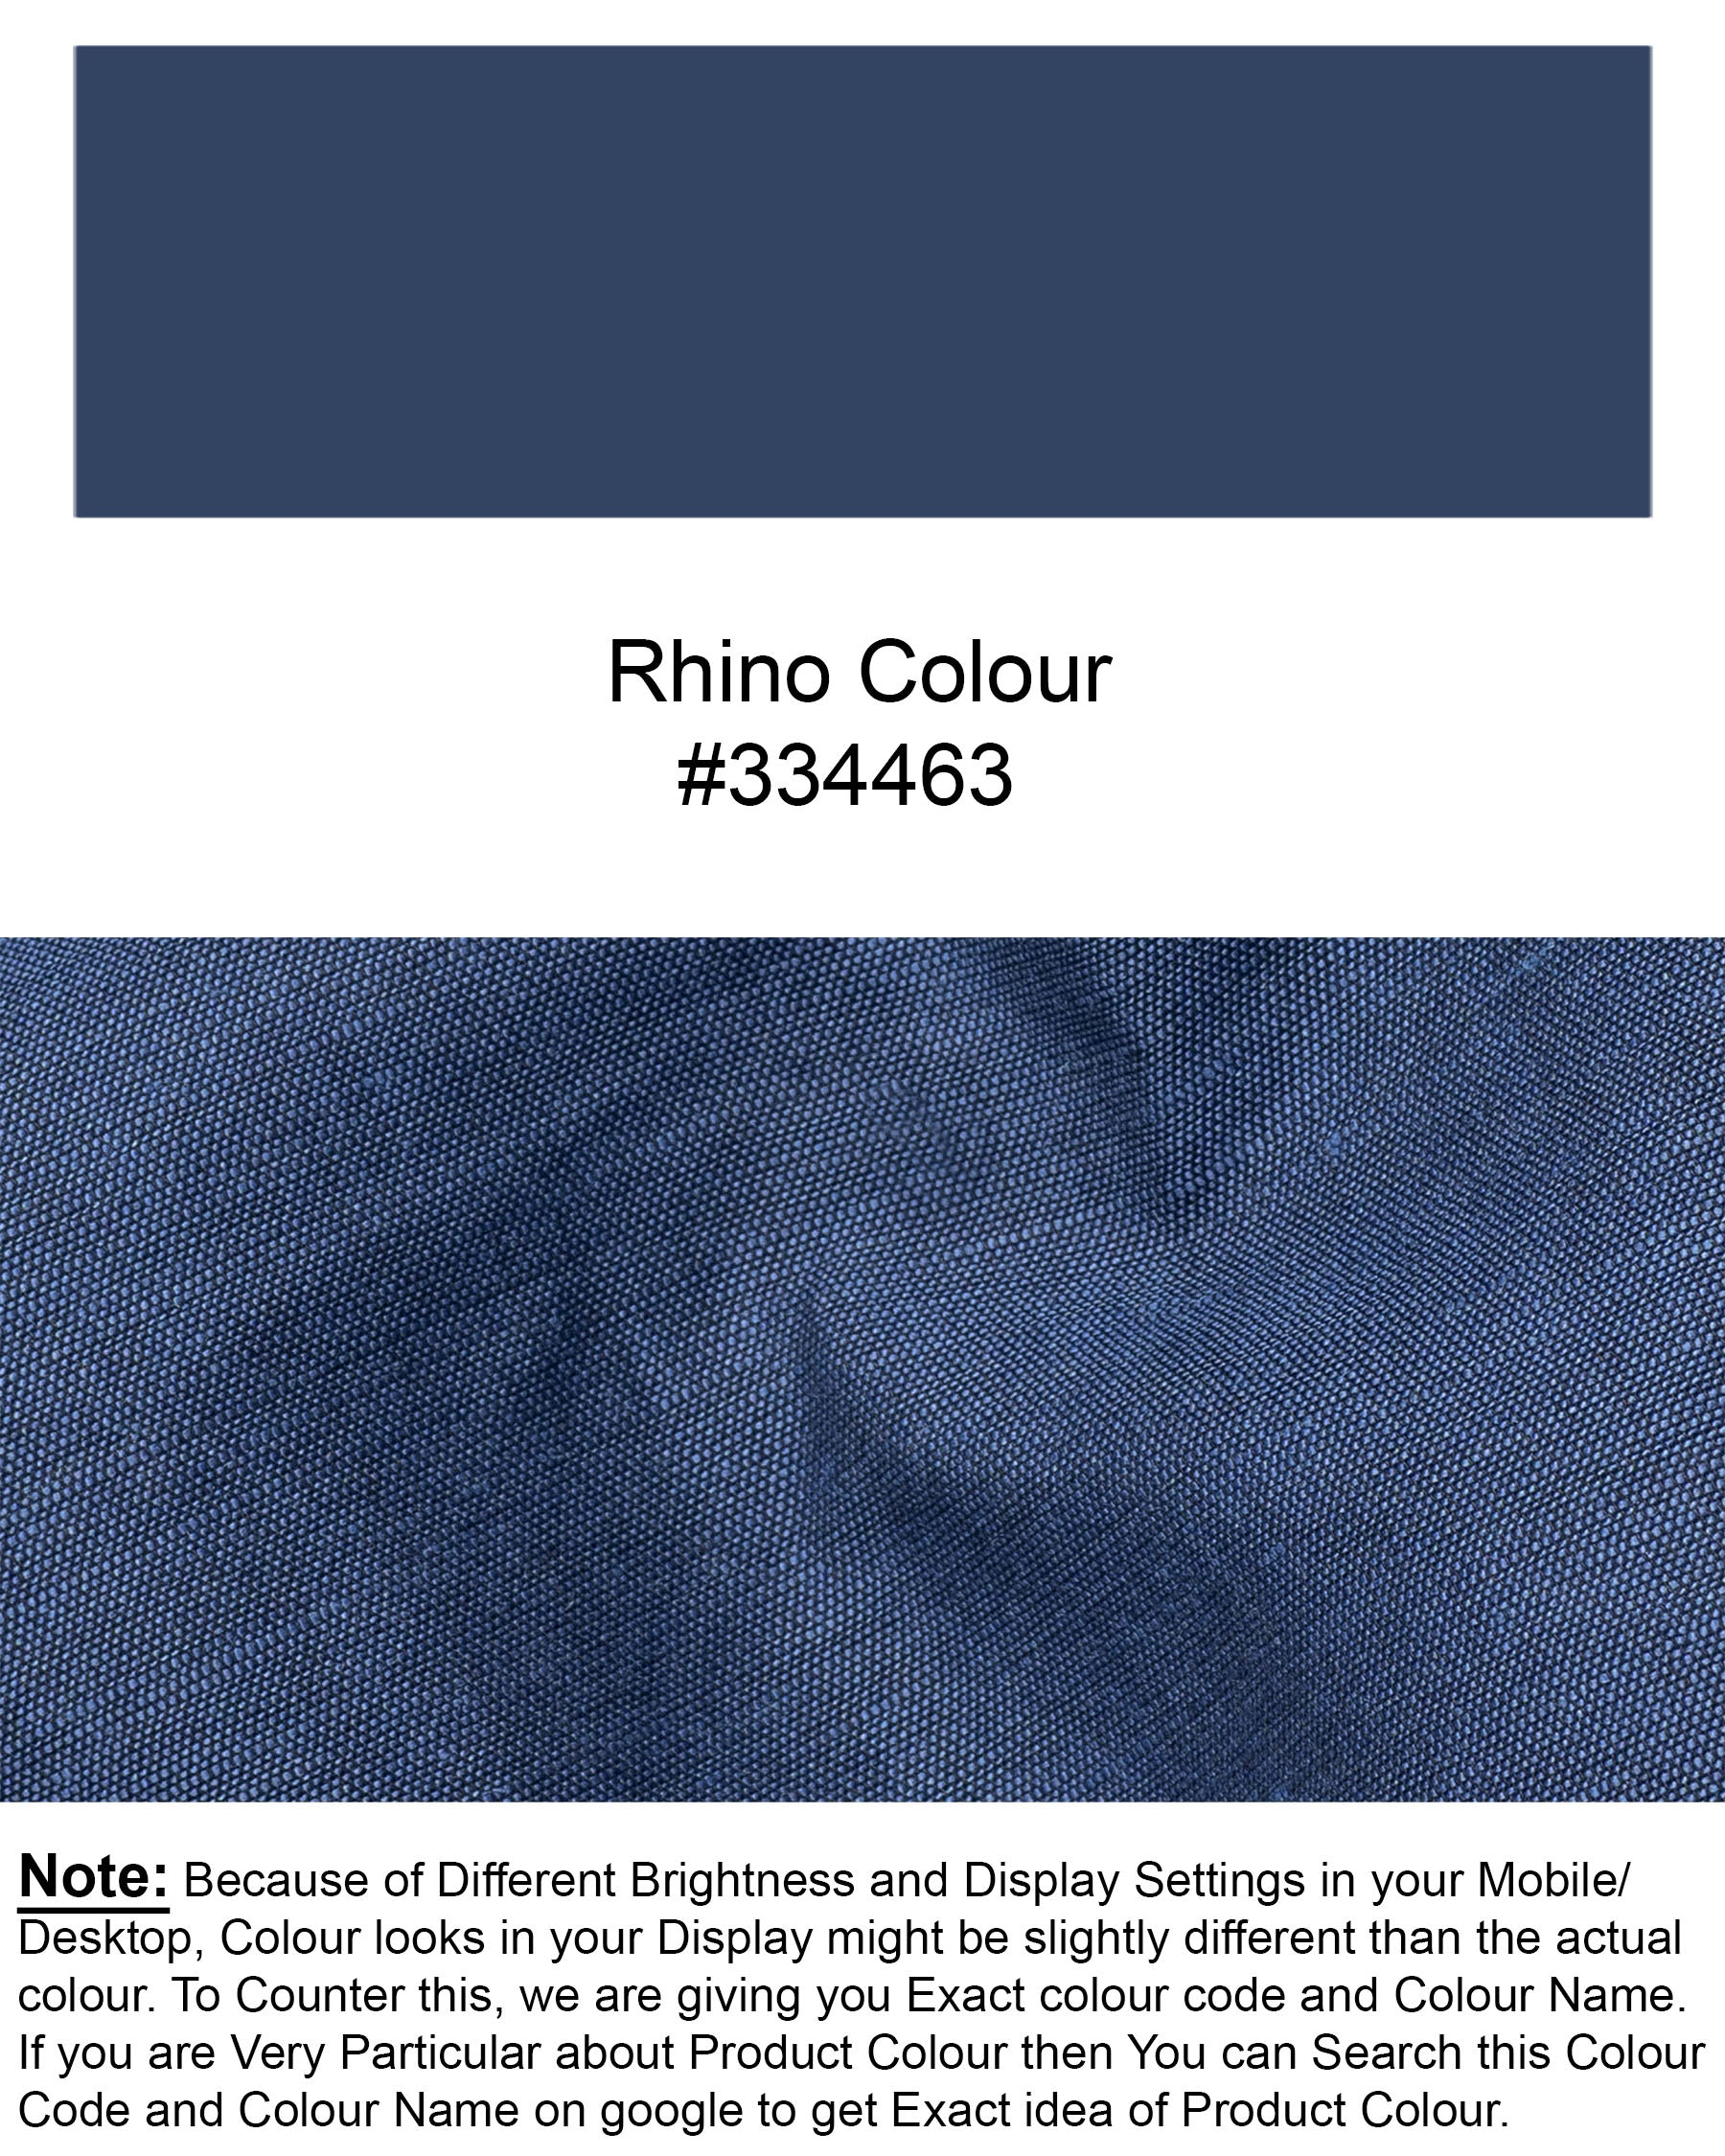 Rhino Blue Luxurious Linen Shirt 6870-BD-BLE-38,6870-BD-BLE-38,6870-BD-BLE-39,6870-BD-BLE-39,6870-BD-BLE-40,6870-BD-BLE-40,6870-BD-BLE-42,6870-BD-BLE-42,6870-BD-BLE-44,6870-BD-BLE-44,6870-BD-BLE-46,6870-BD-BLE-46,6870-BD-BLE-48,6870-BD-BLE-48,6870-BD-BLE-50,6870-BD-BLE-50,6870-BD-BLE-52,6870-BD-BLE-52